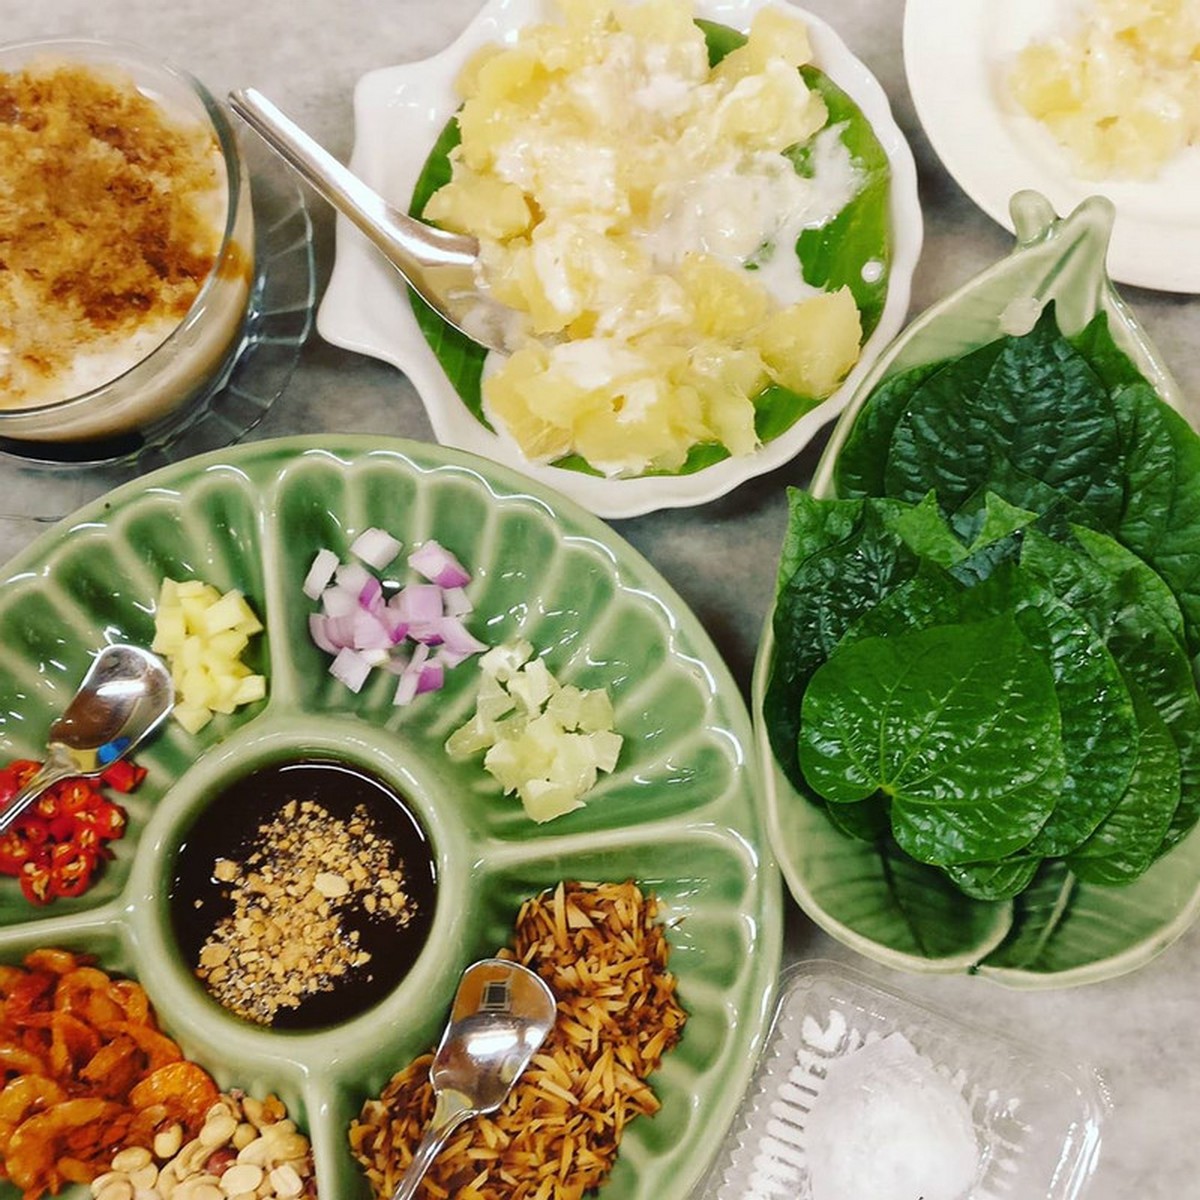 Thai halal streat Kedai Makan